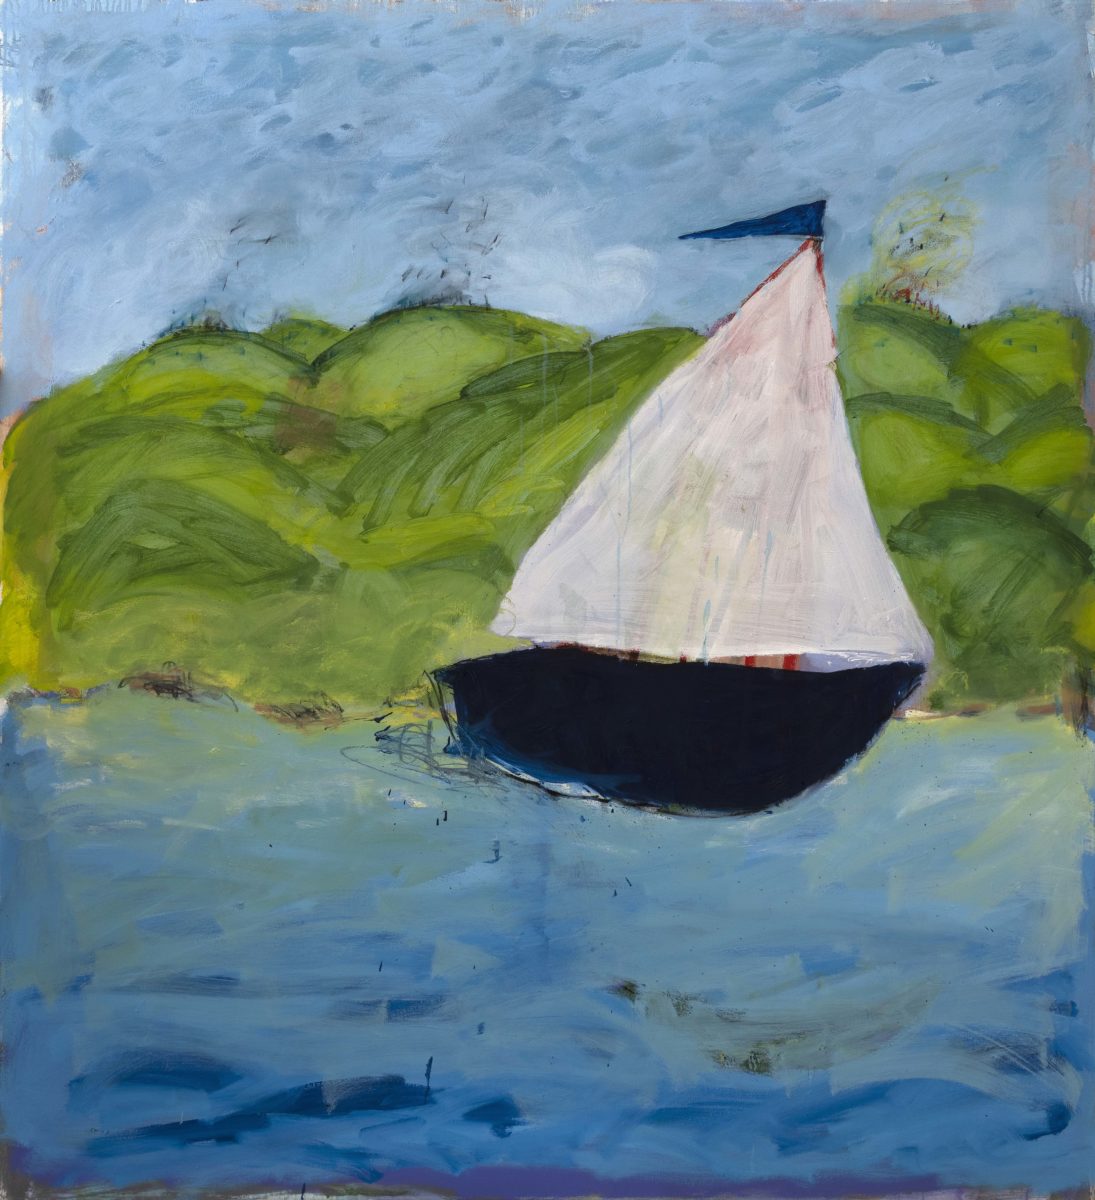 Solo Journey 2022 | Sue Gill | Oil on canvas | 150 x 137 cm | $4800